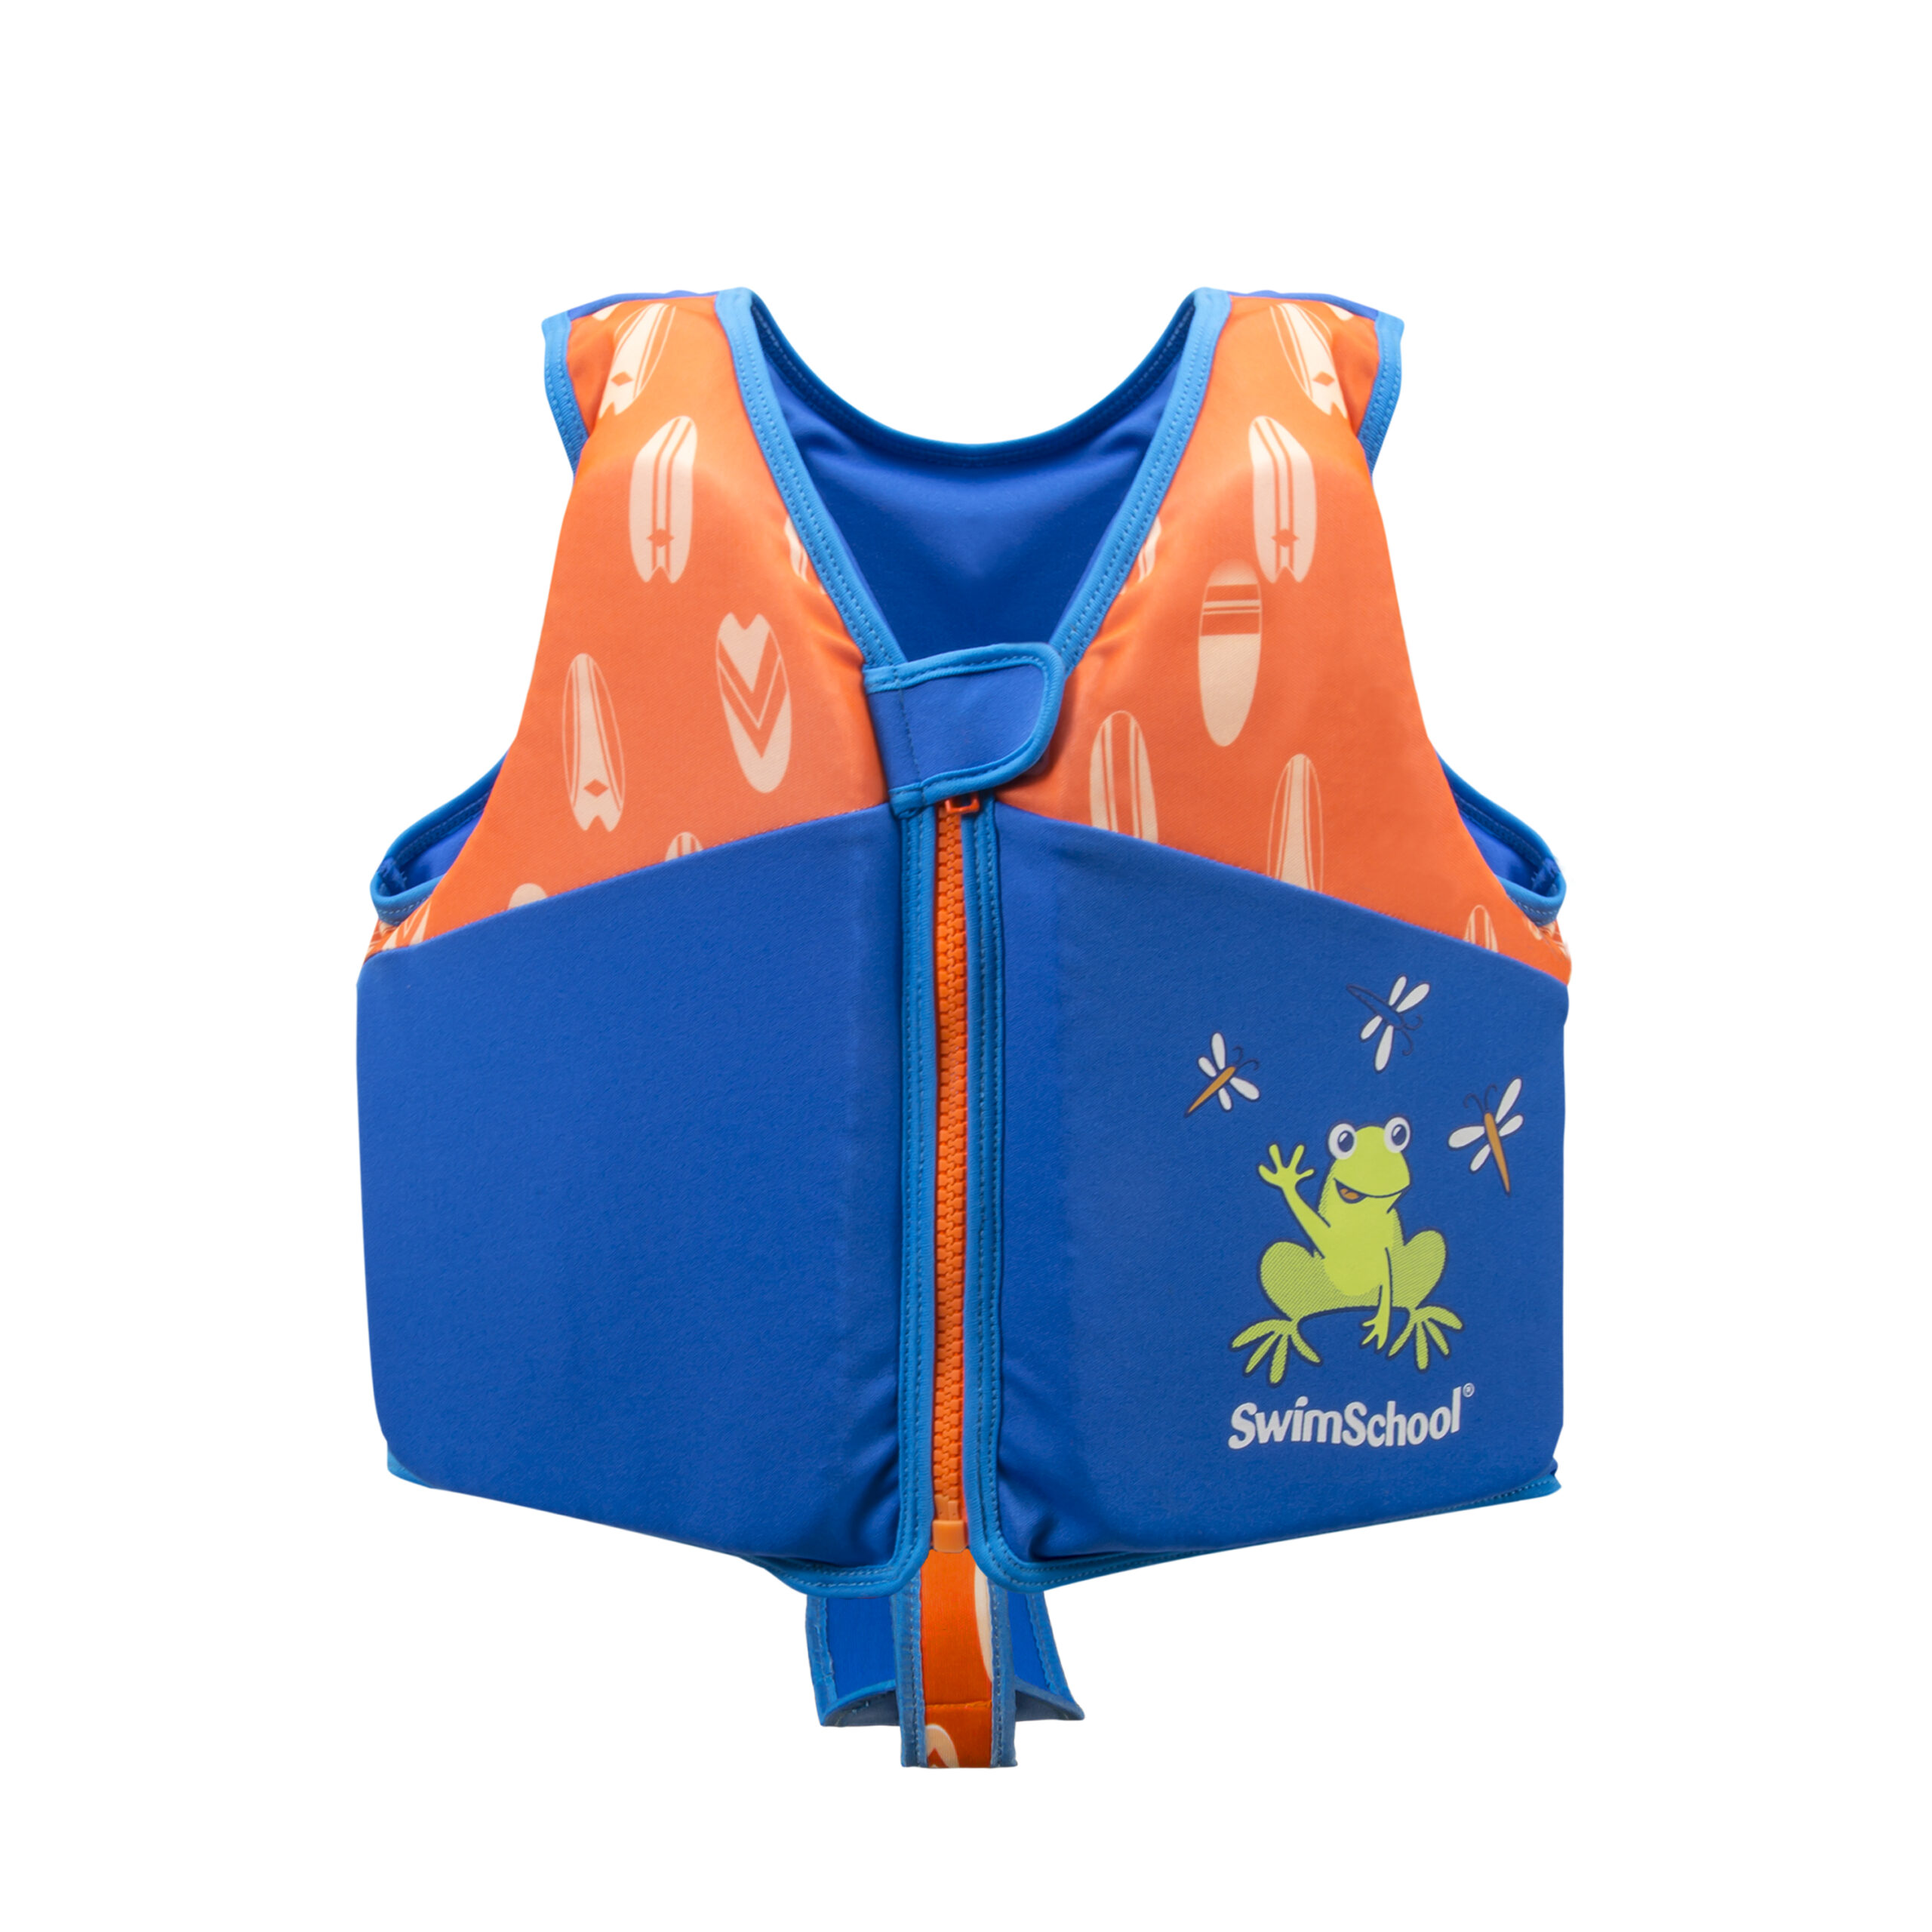 Swim trainer vest in blue